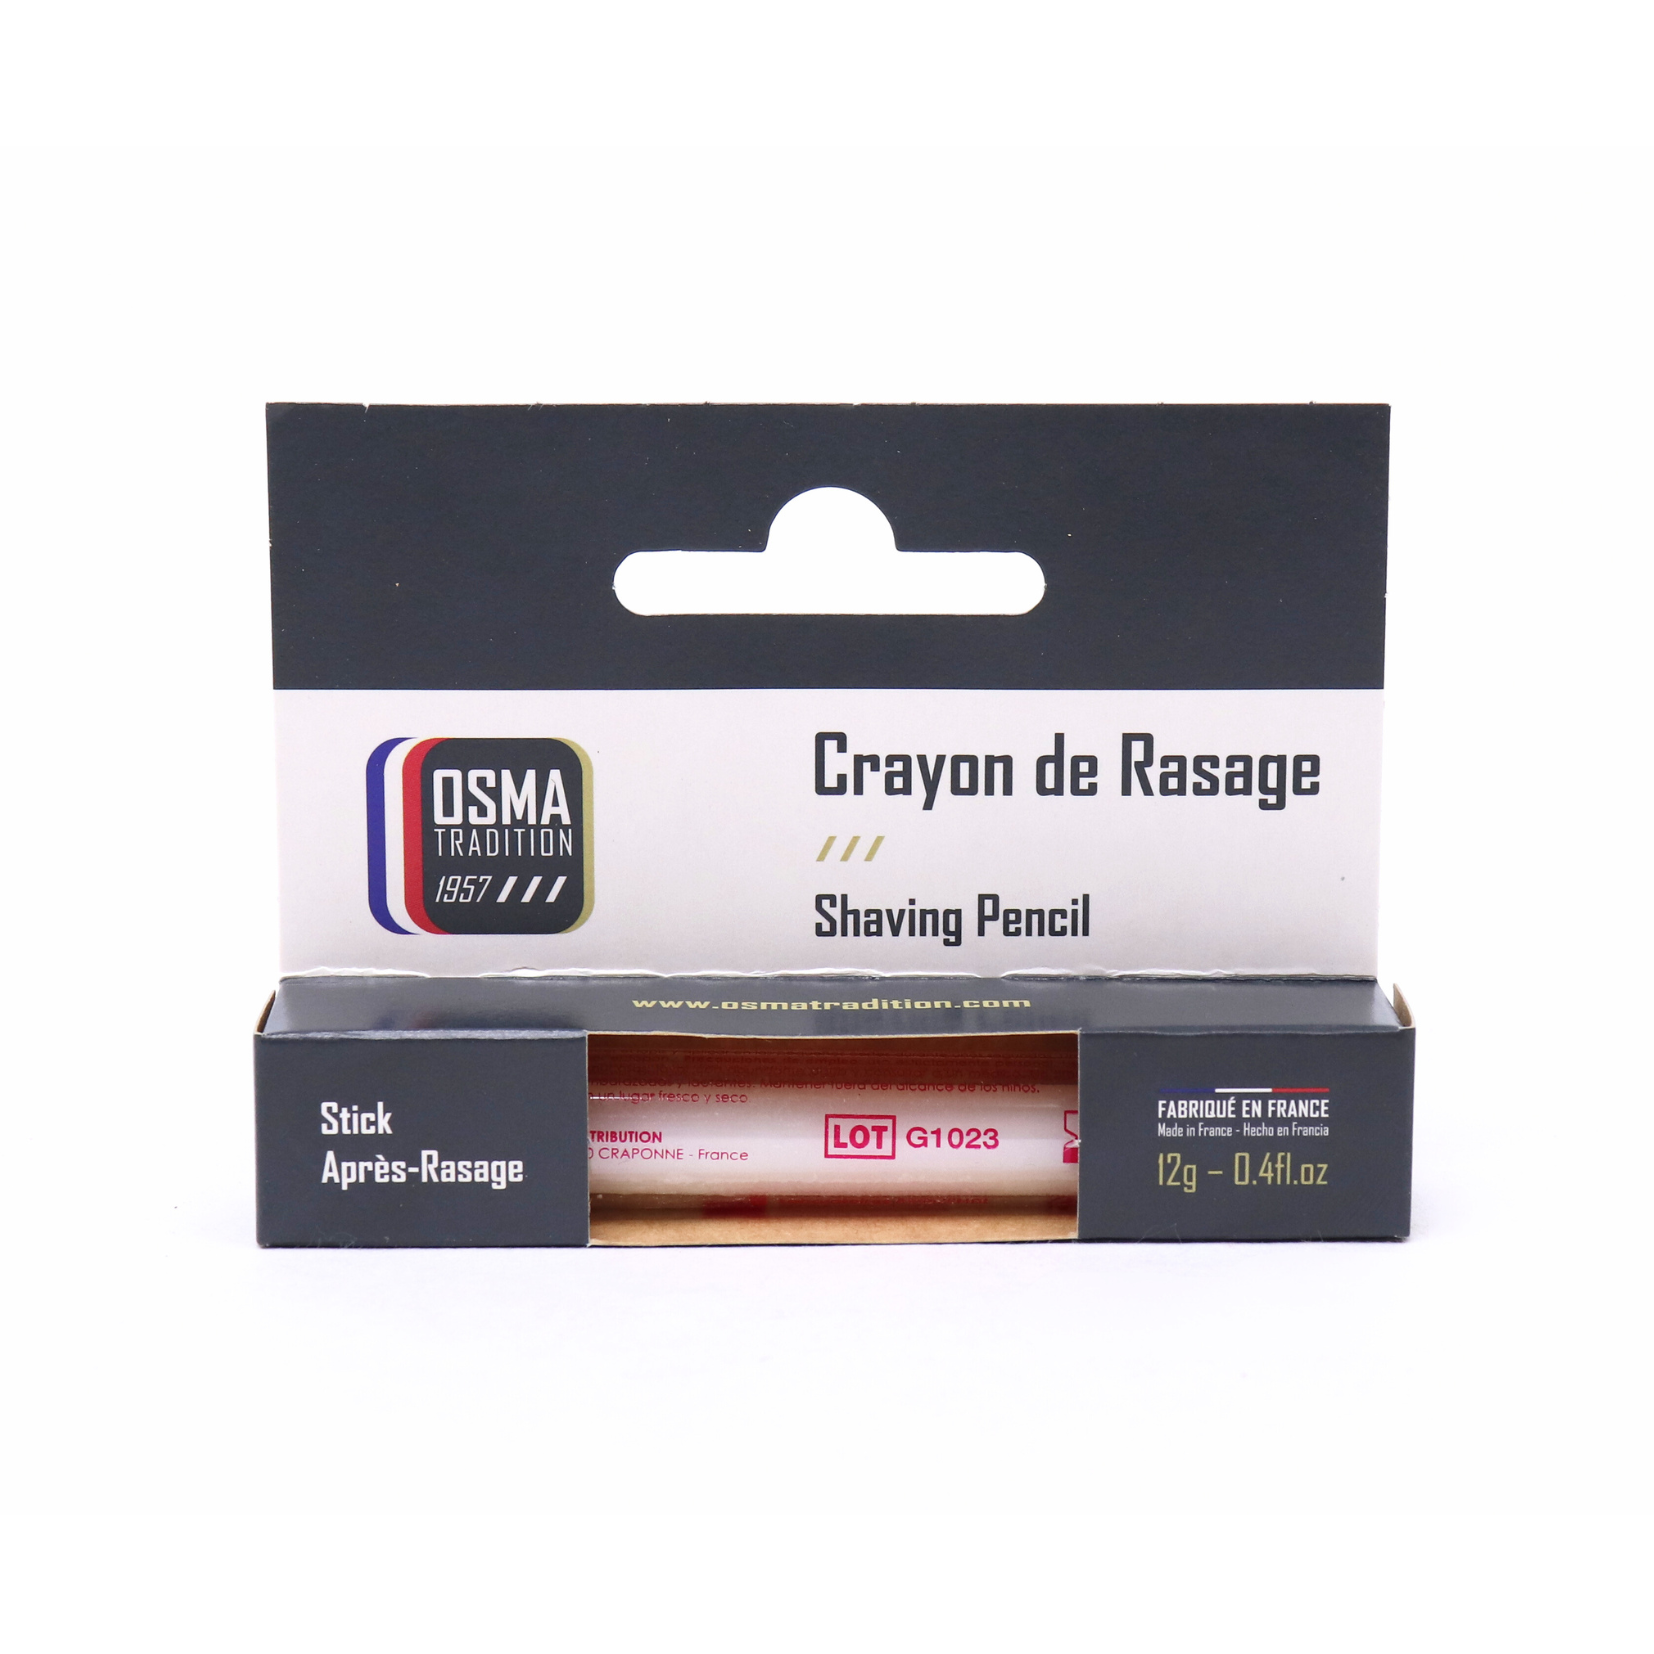 OSMA - Pierre d'Alun - Crayon hémostatique